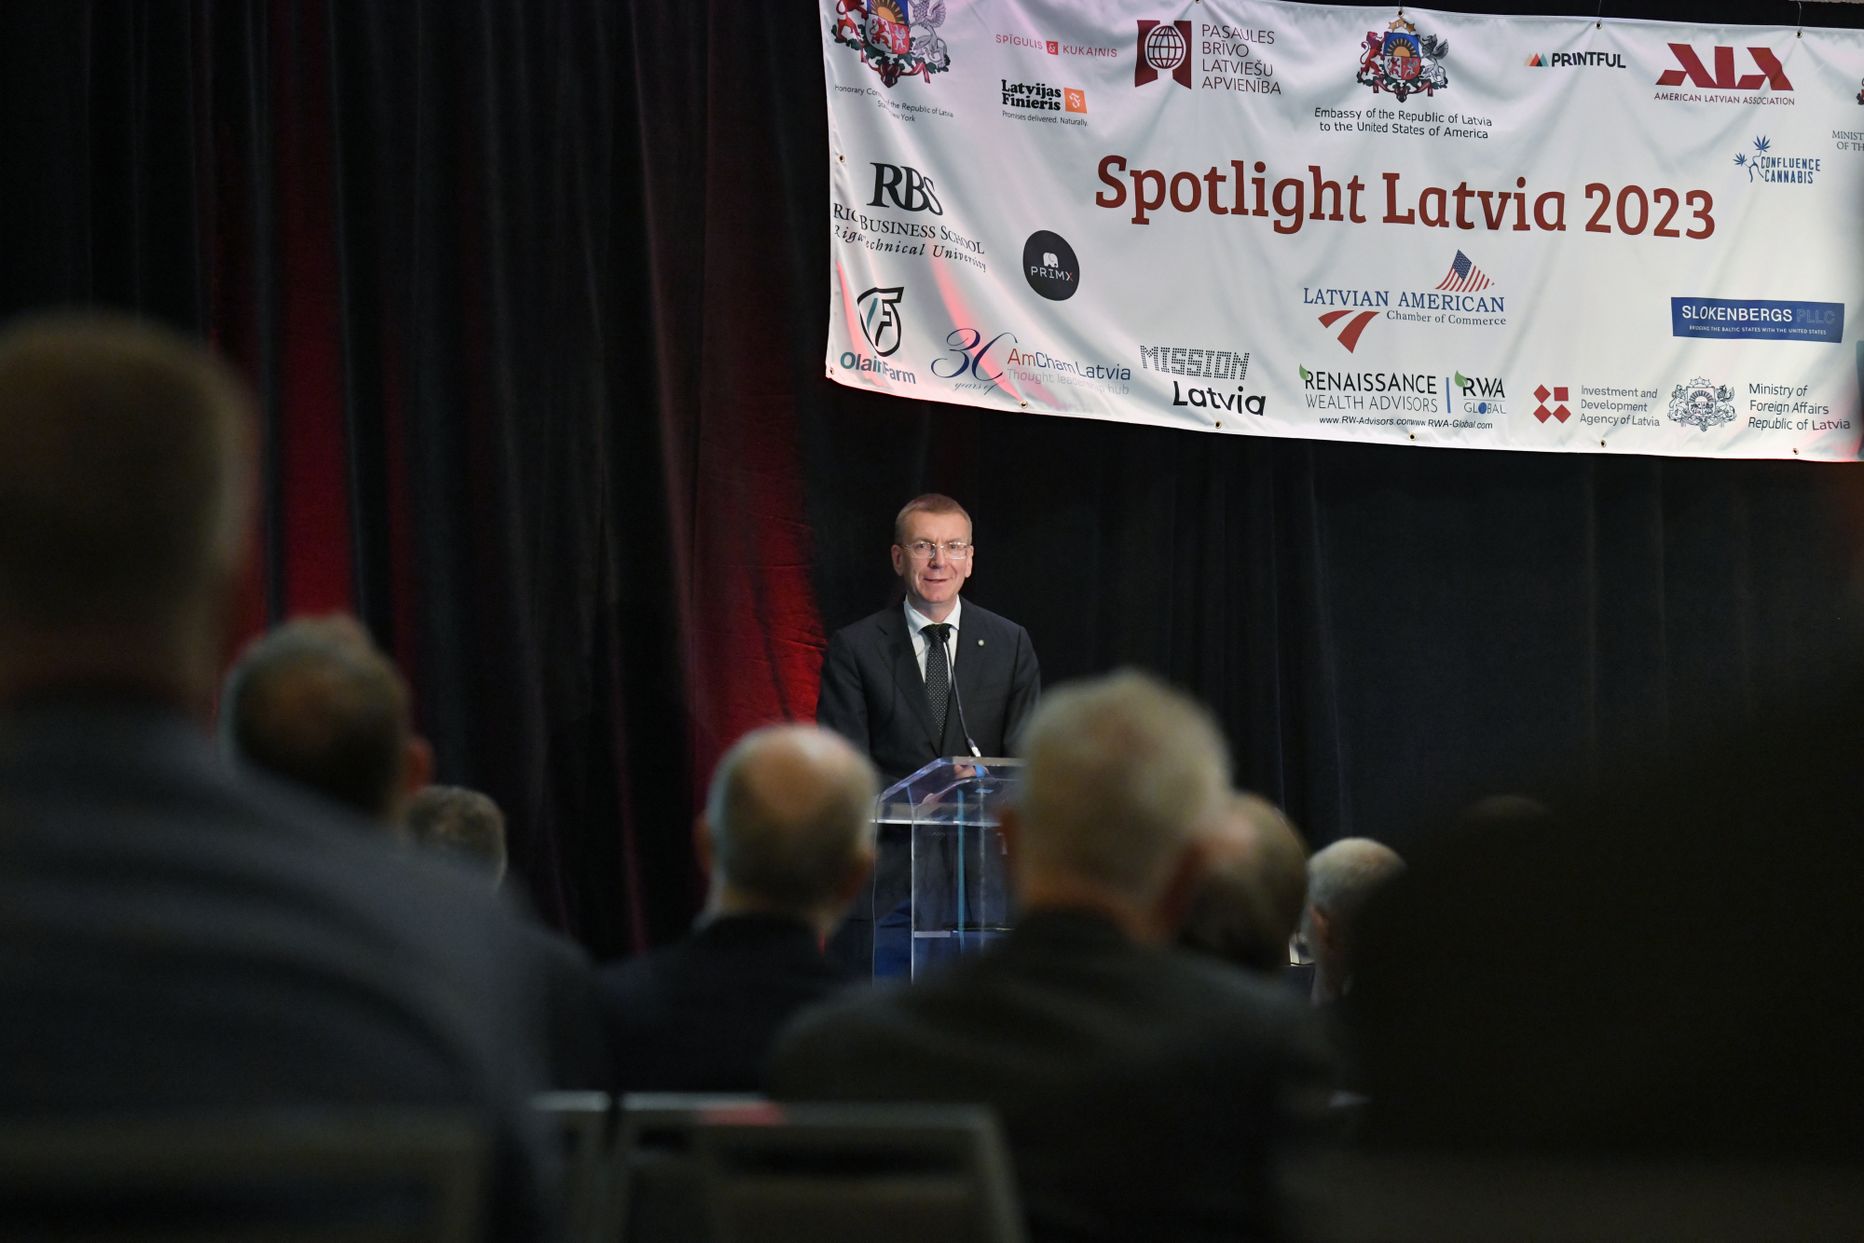 Valsts prezidents Edgars Rinkēvičs Bostonā piedalās konferencē “Spotlight Latvia 2023”